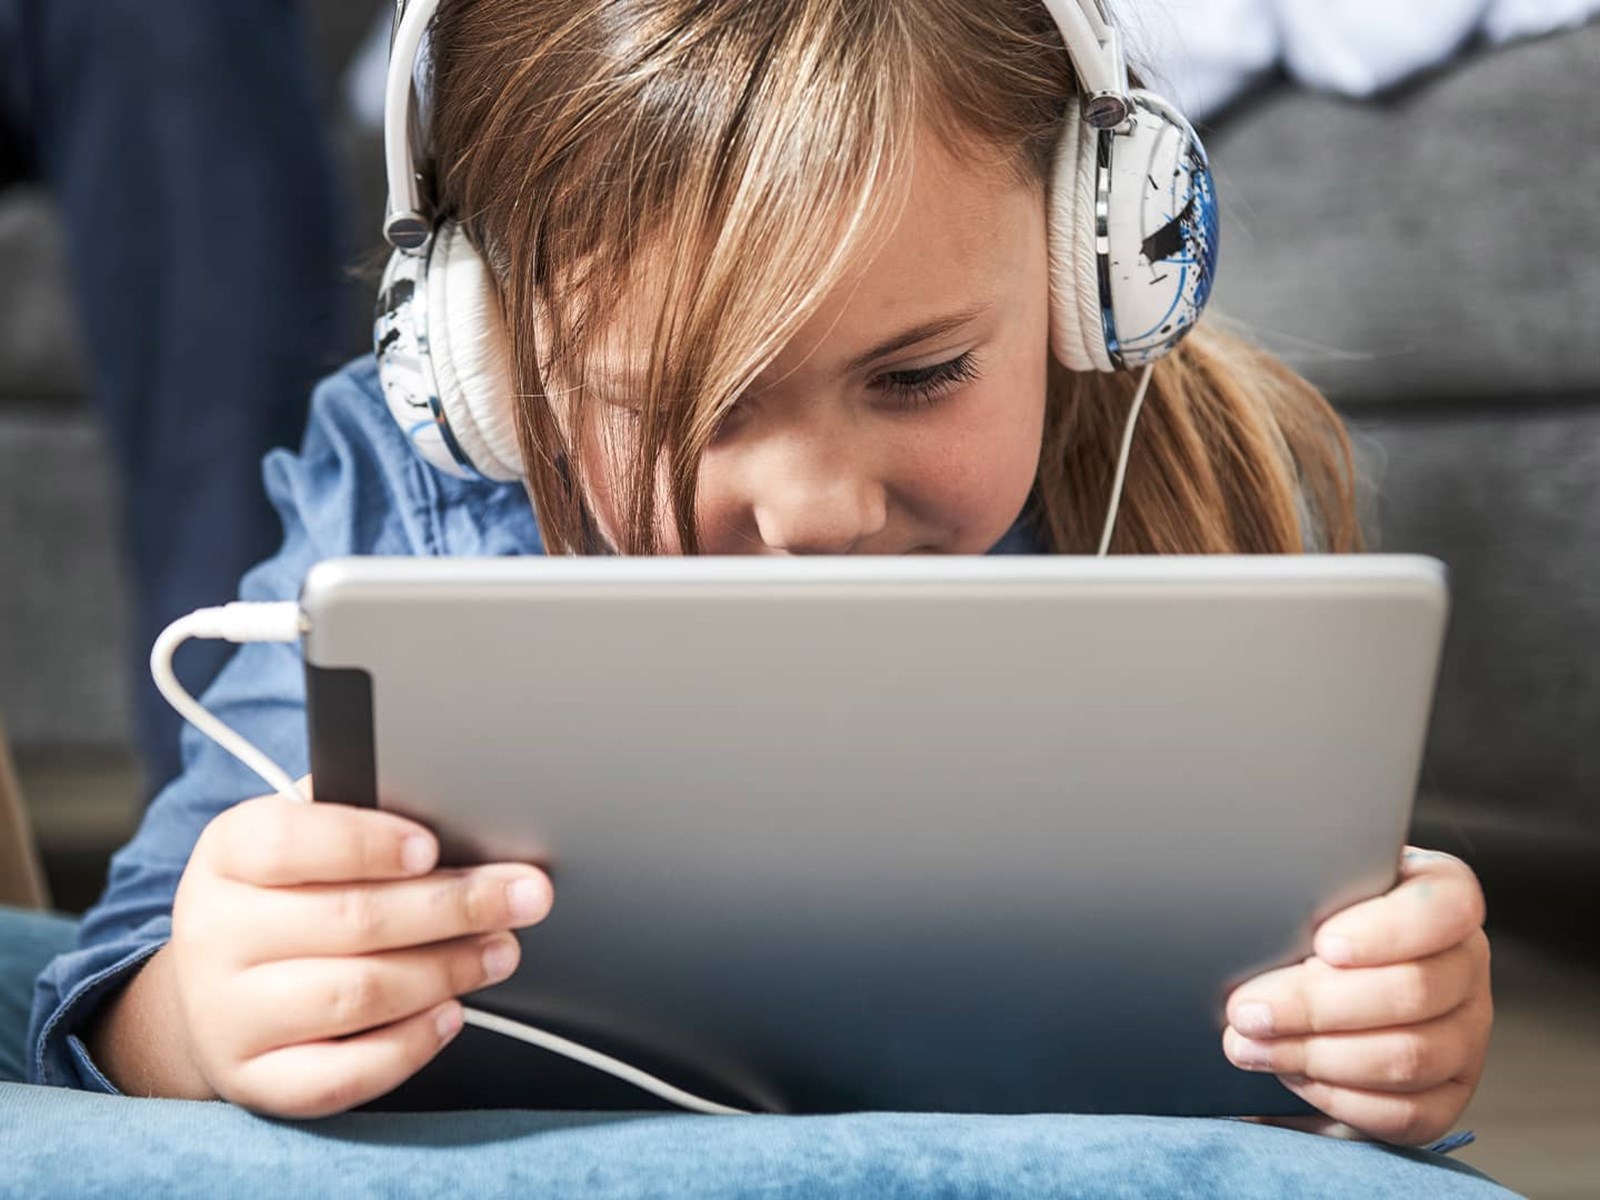 Pige ligger på gulvet med ipad og høretelefoner på og surfer sikkert på nettet, fordi hendes forældre har en digital sikkerhedspakke